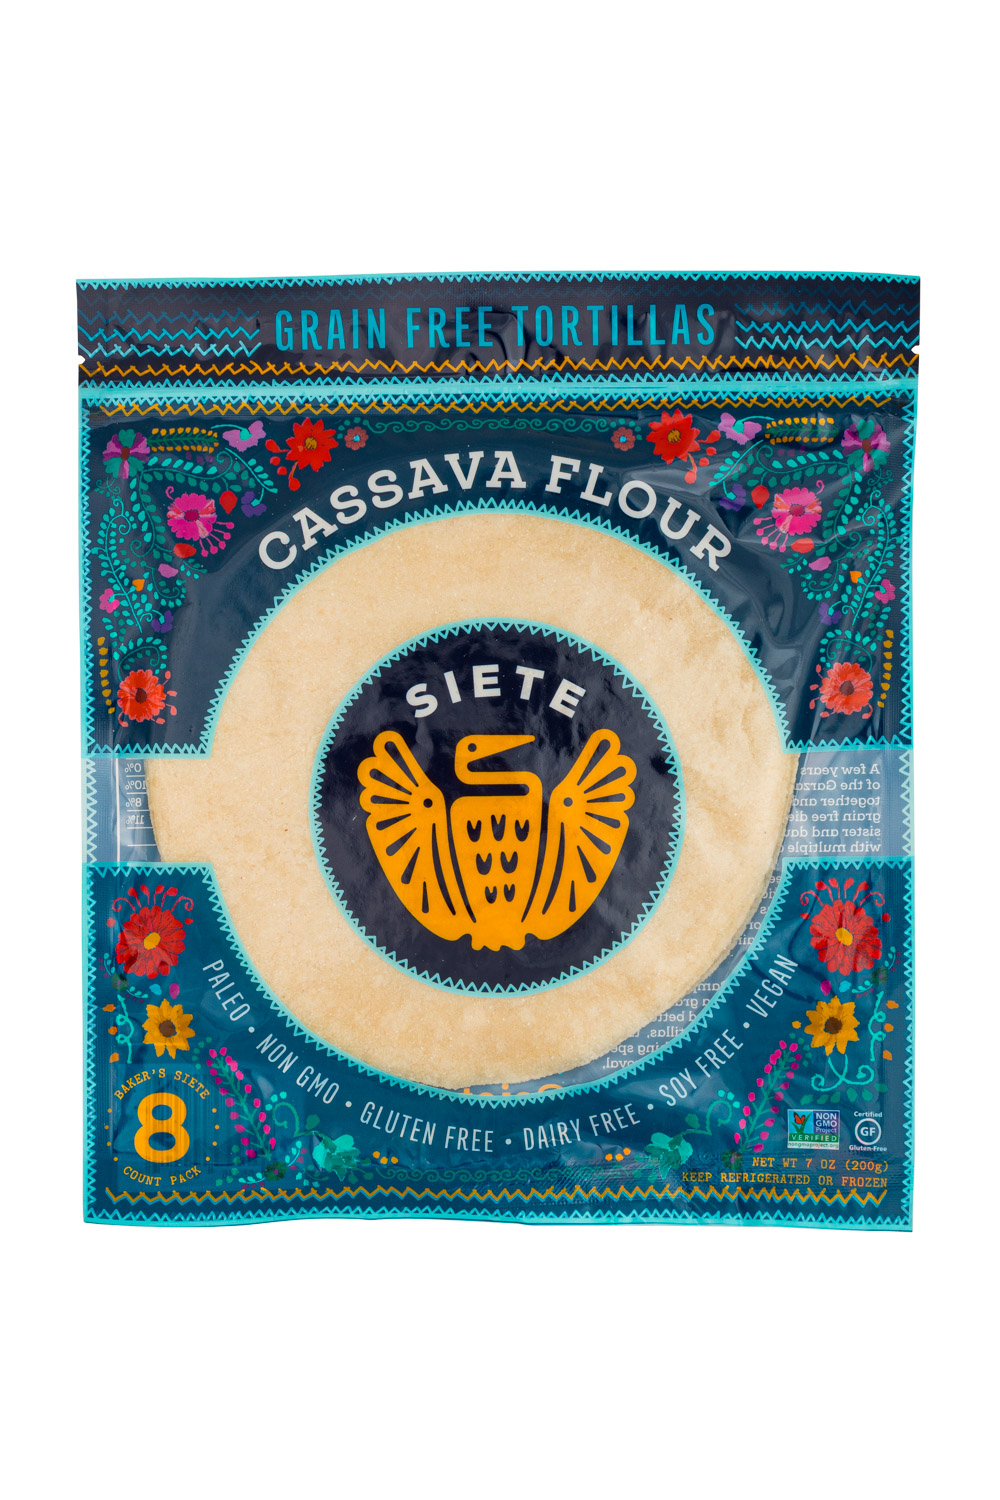 GF Tortillas - Cassava Flour